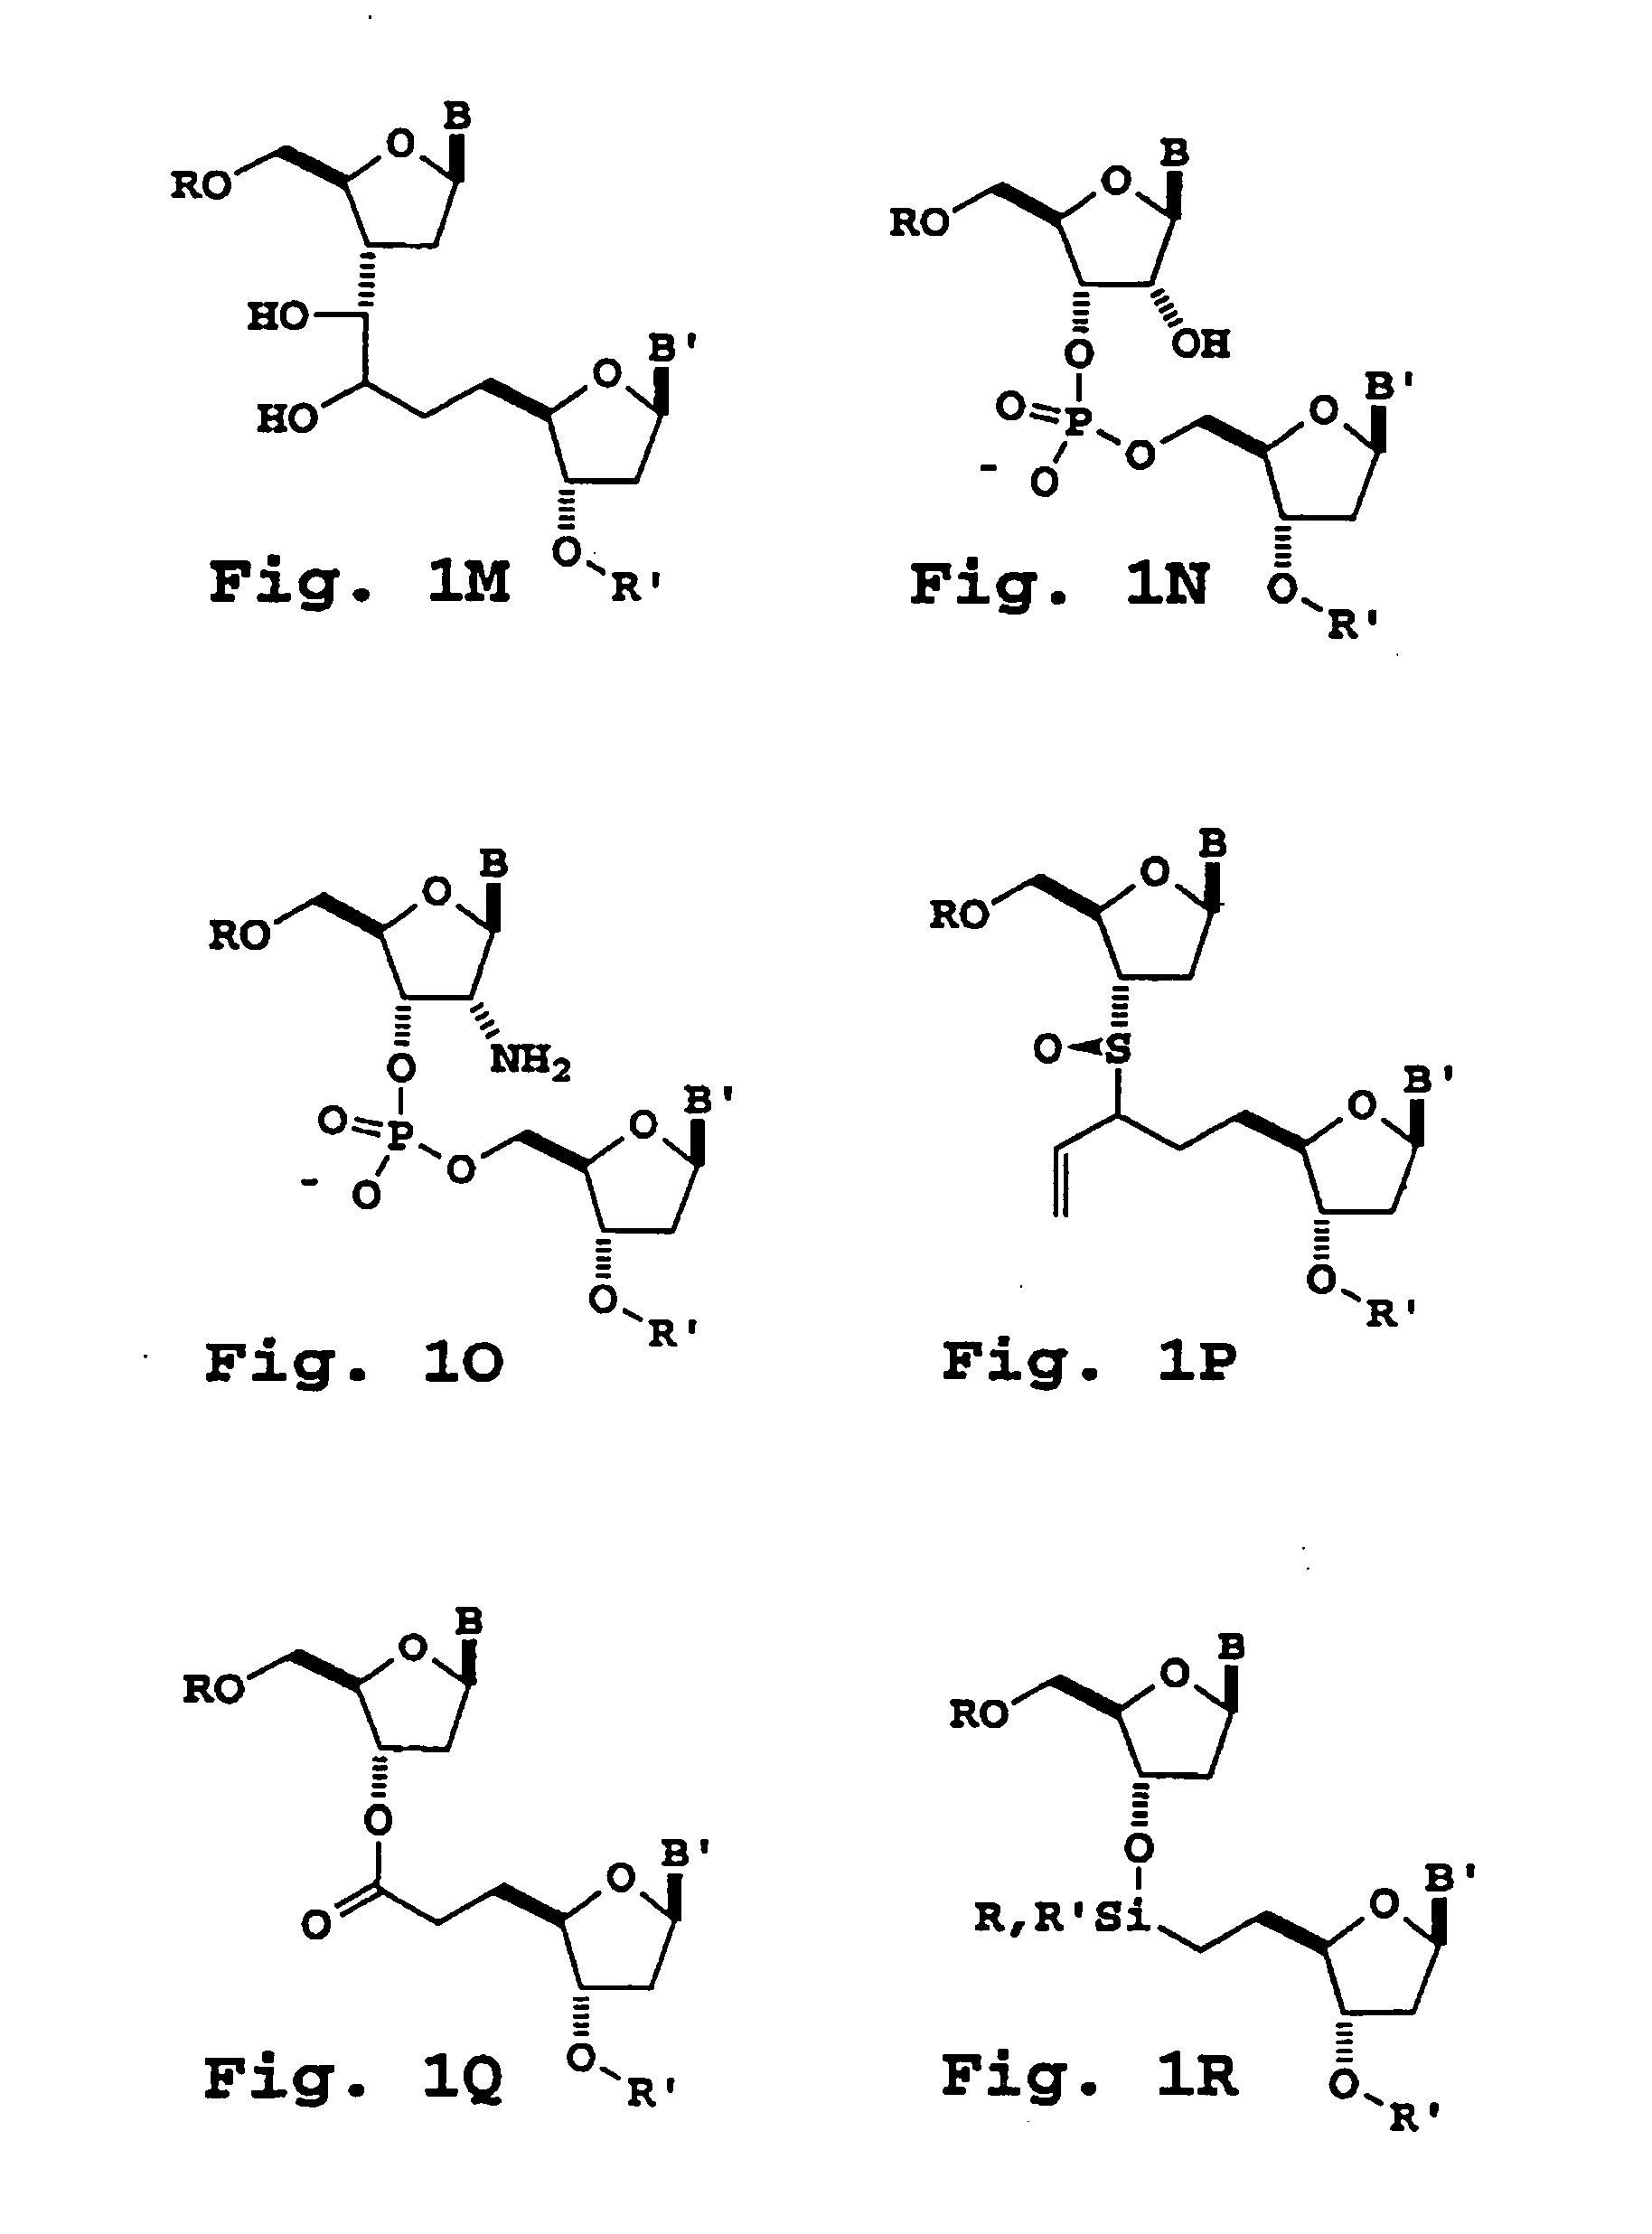 Oligonucleotide sizing using cleavable primers